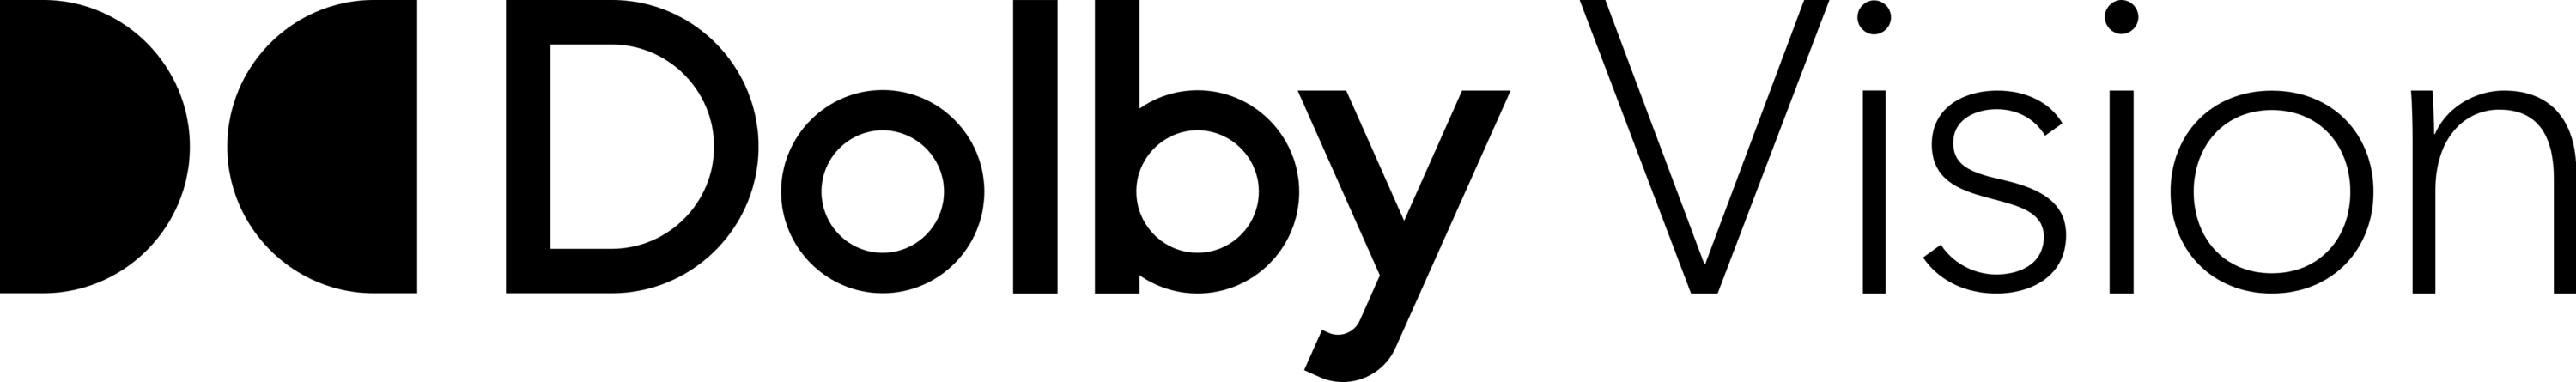 Dolby Vision Logo 2019 horizontally